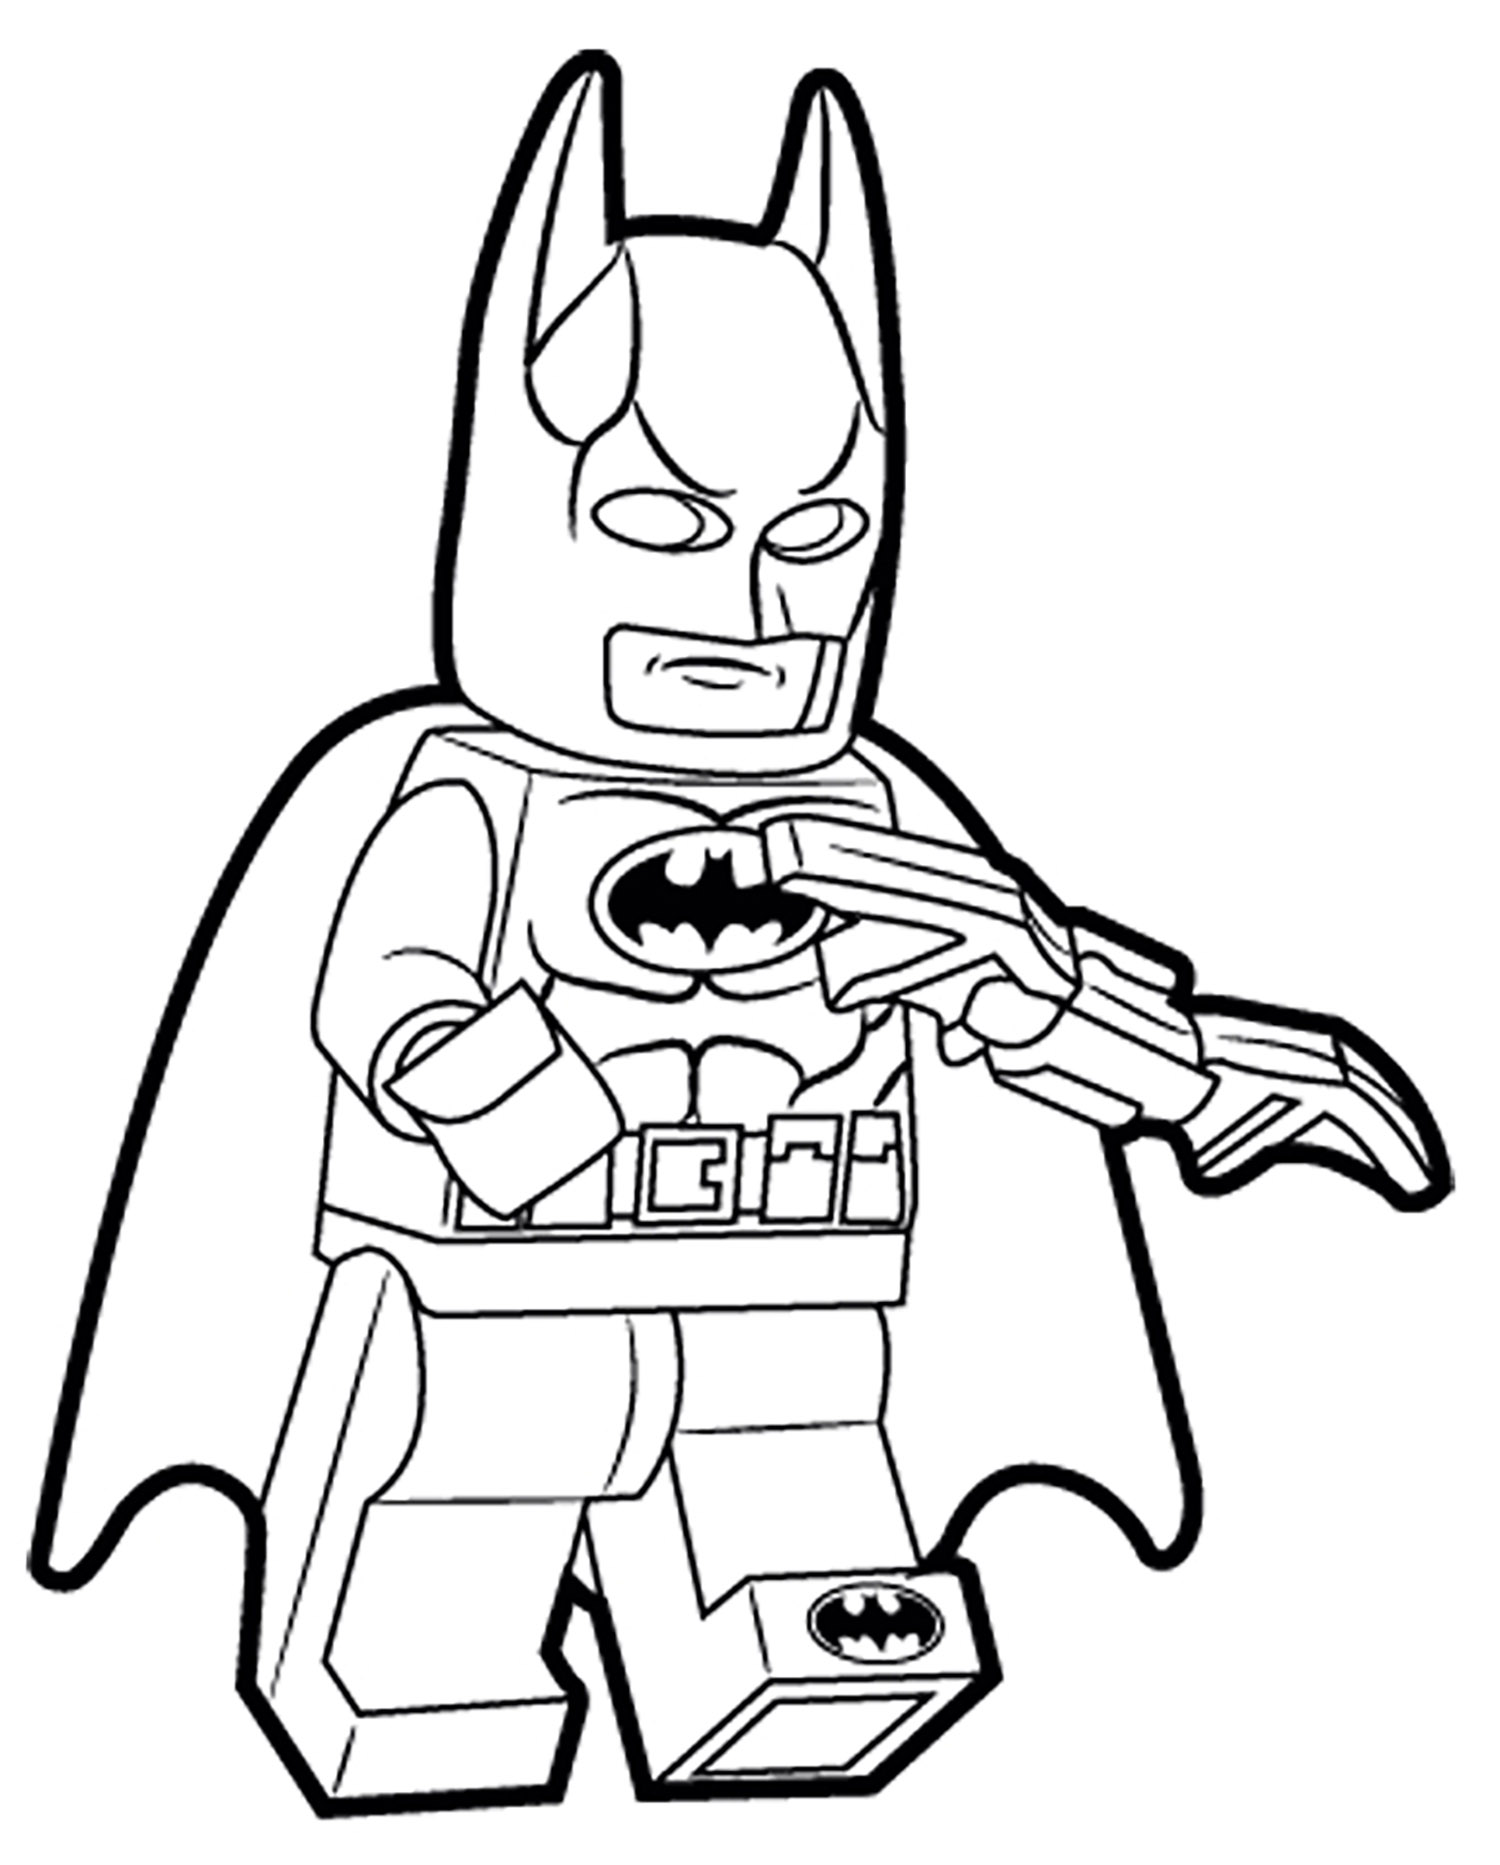 A versão Lego do Batman é o máximo!